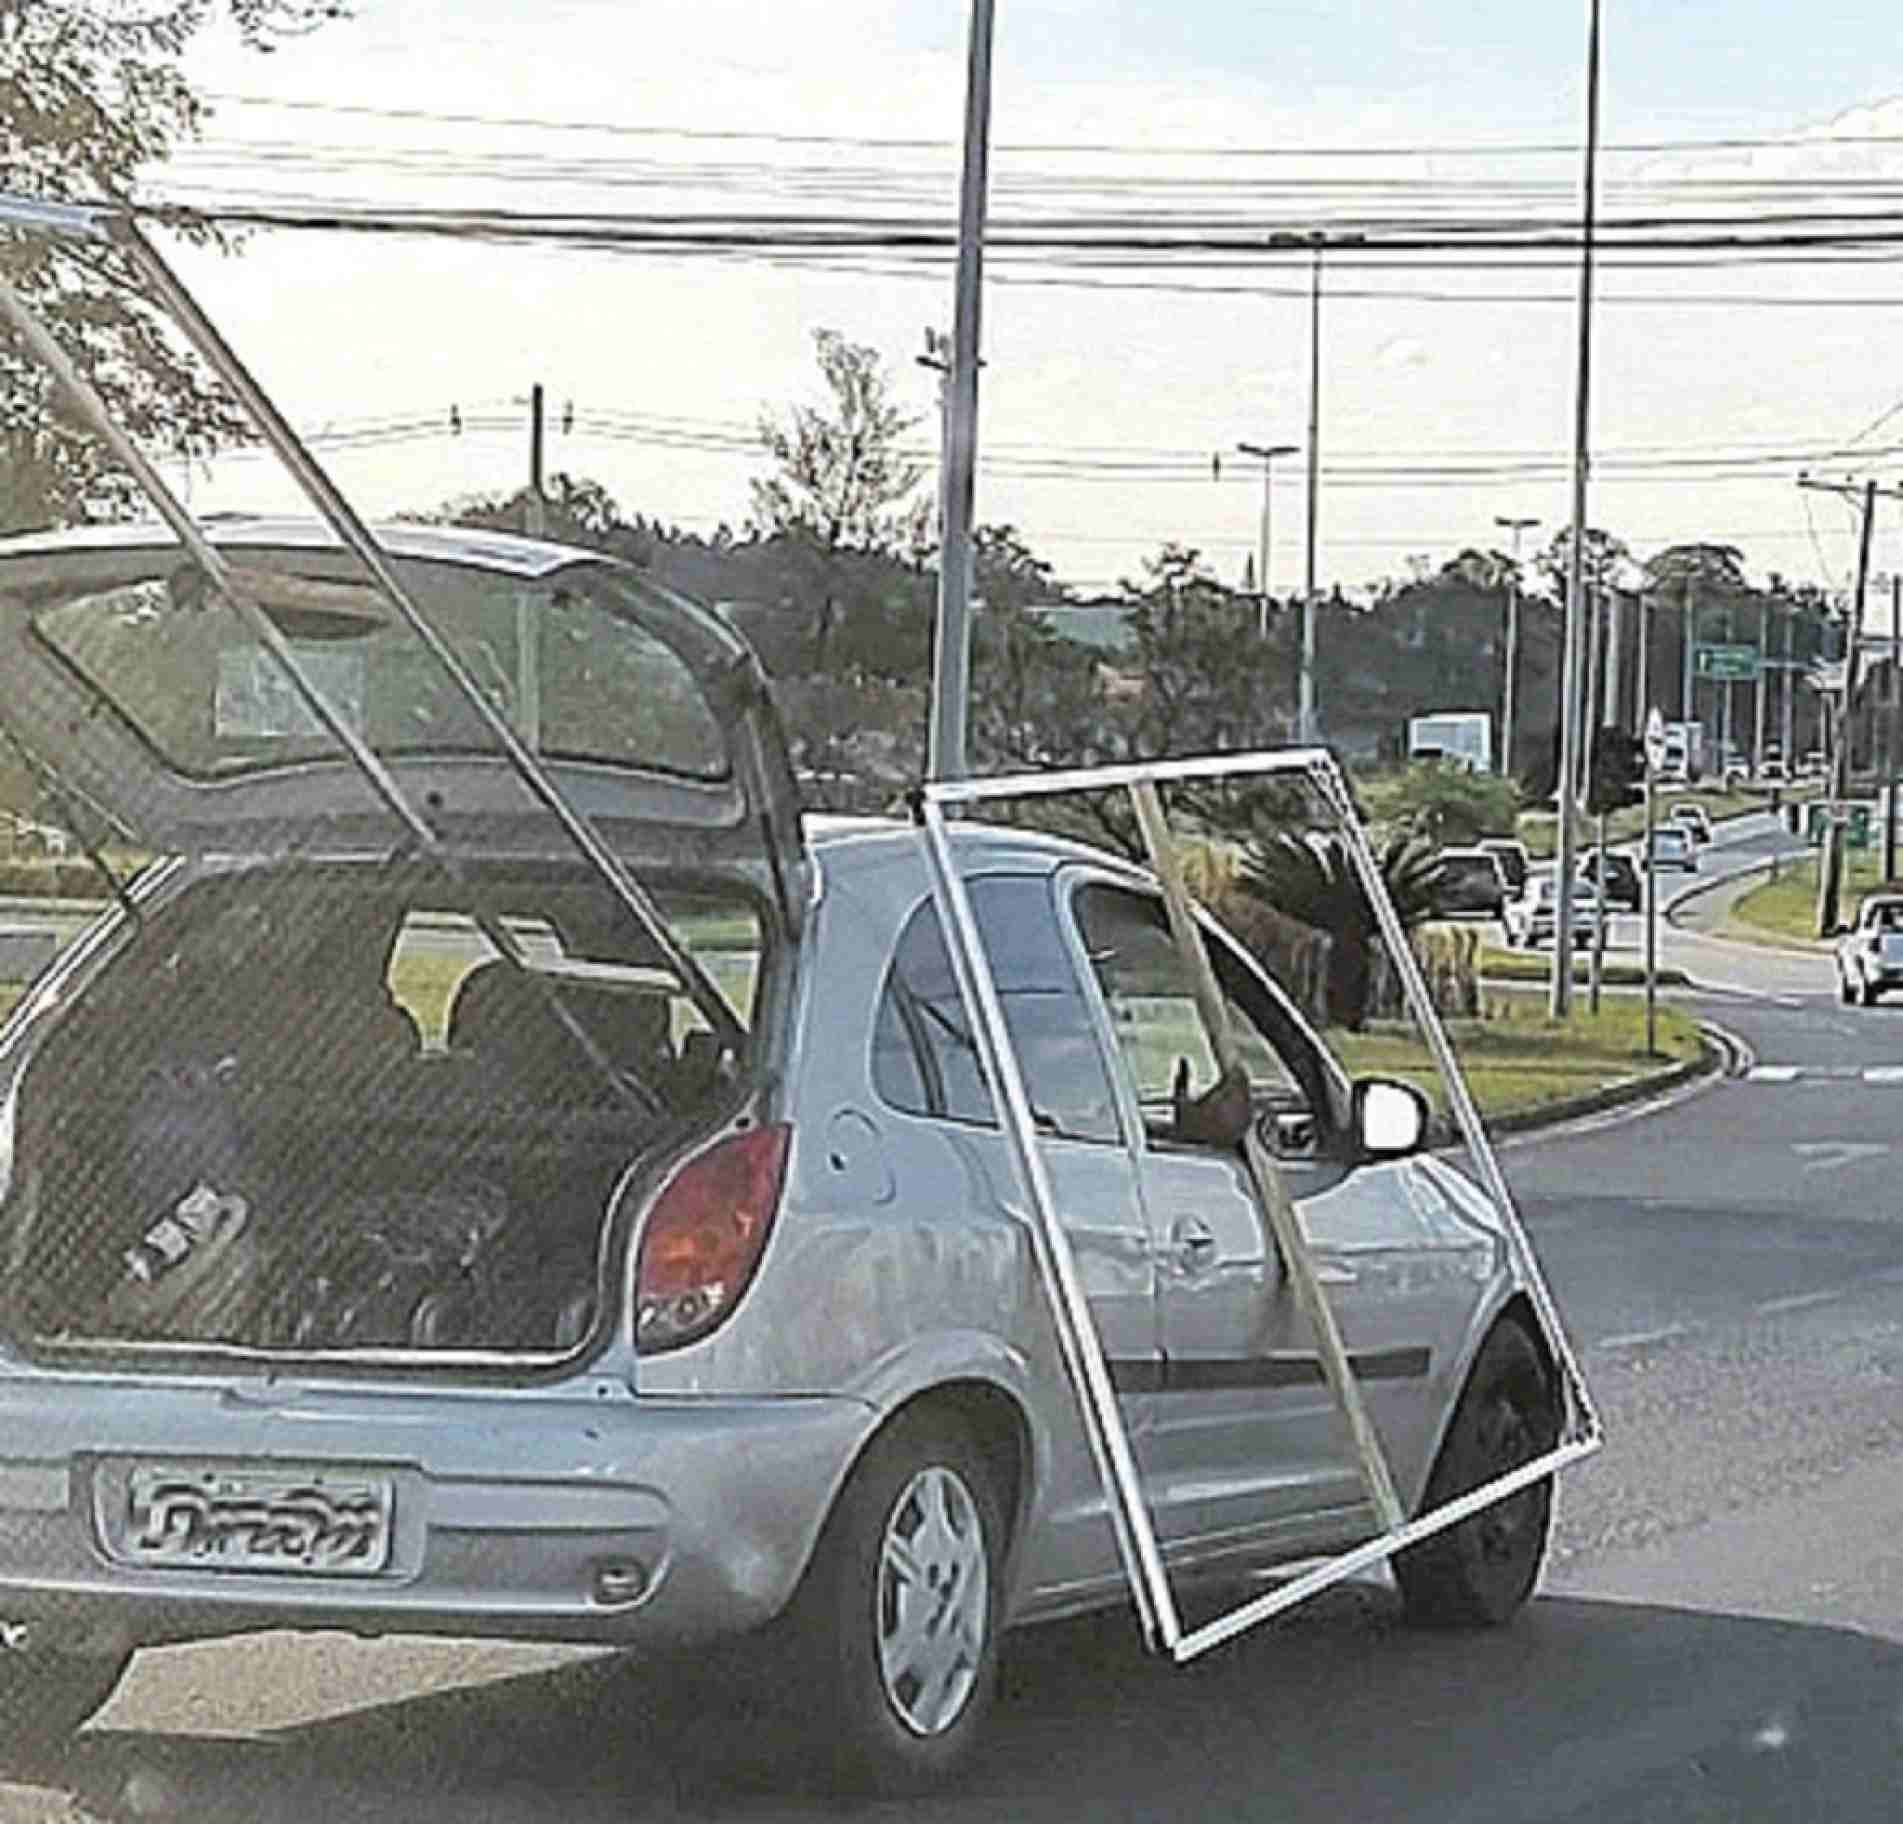 Transporte inadequado pode provocar acidentes